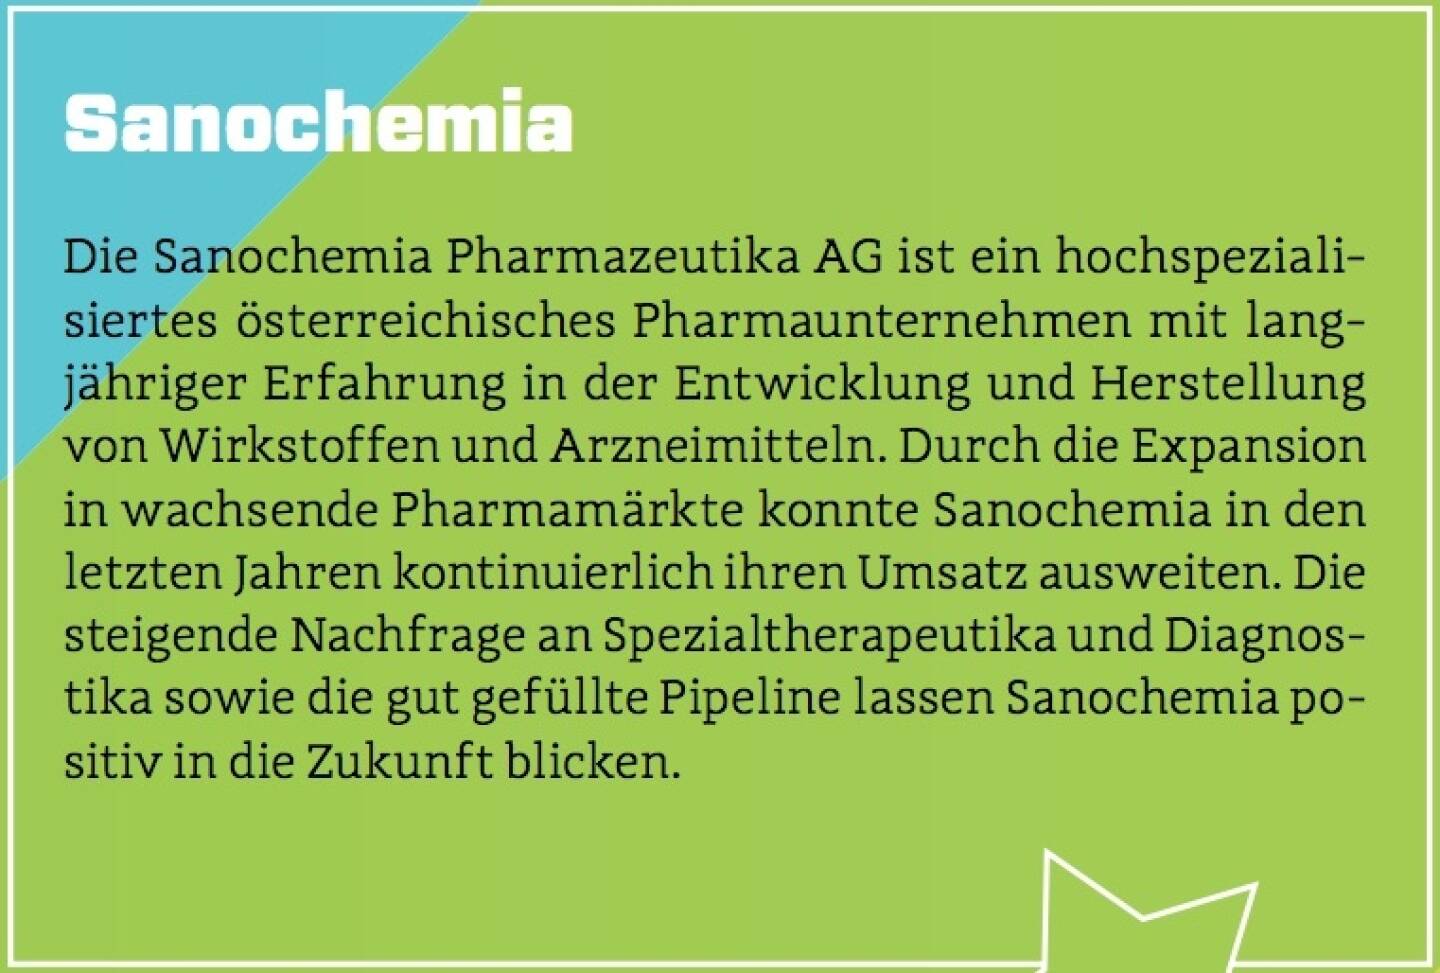 Sanochemia - Die Sanochemia Pharmazeutika AG ist ein hochspezialisiertes österreichisches Pharmaunternehmen mit langjähriger Erfahrung in der Entwicklung und Herstellung von Wirkstoffen und Arzneimitteln. Durch die Expansion in wachsende Pharmamärkte konnte Sanochemia in den letzten Jahren kontinuierlich ihren Umsatz ausweiten. Die steigende Nachfrage an Spezialtherapeutika und Diagnostika sowie die gut gefüllte Pipeline lassen Sanochemia positiv in die Zukunft blicken.